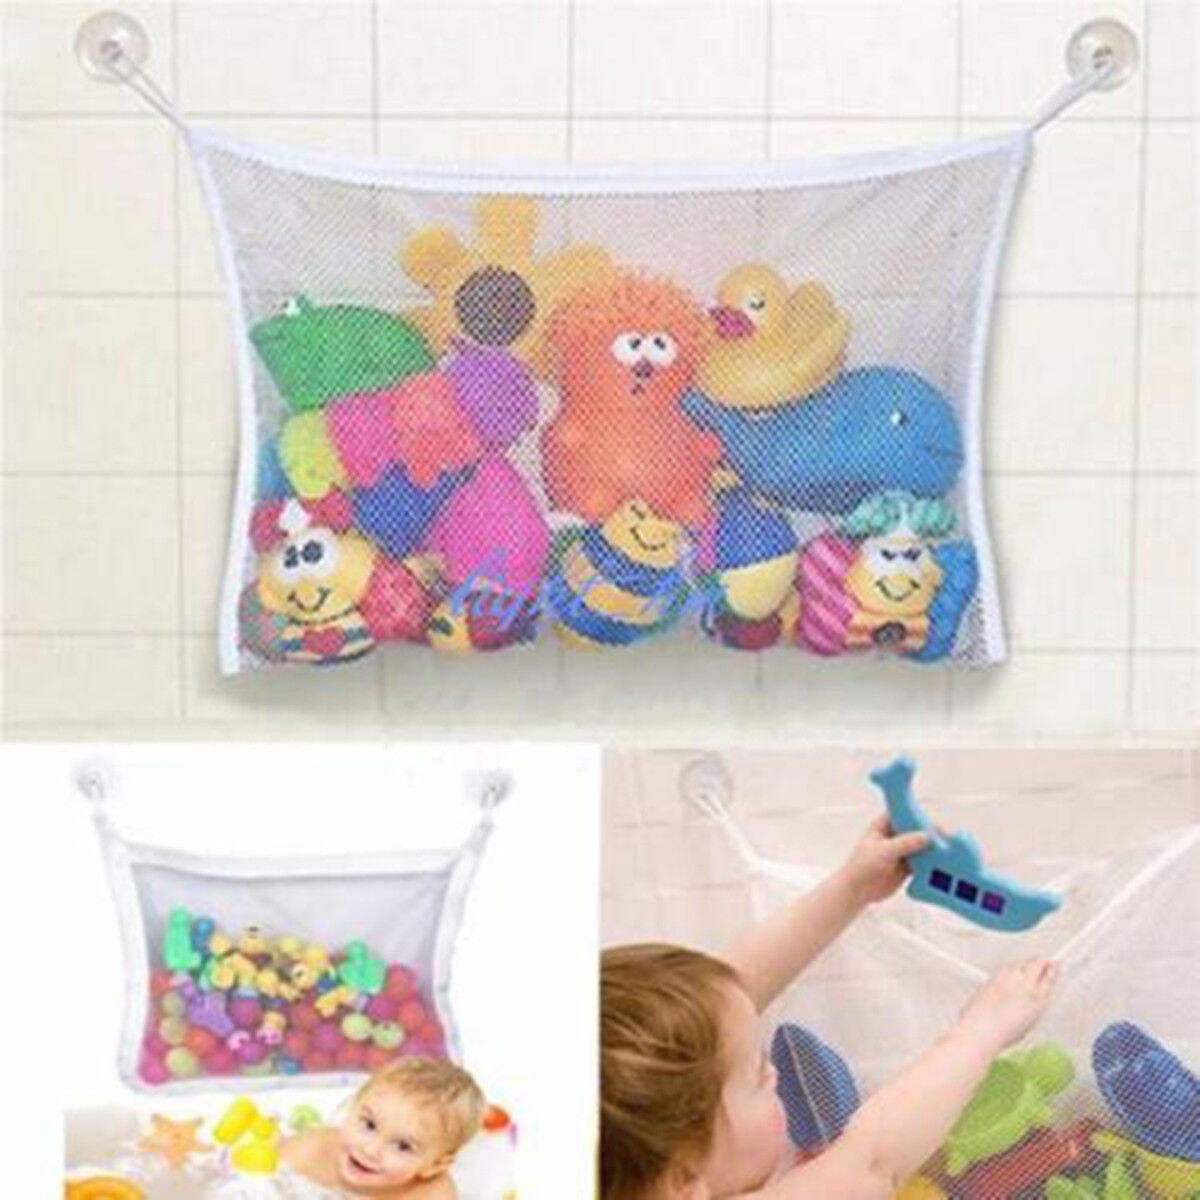 Fashion Baby Bath Bathtub Toy Mesh Net Storage Bag Organizer Holder Bathroom Unbranded Does Not Apply